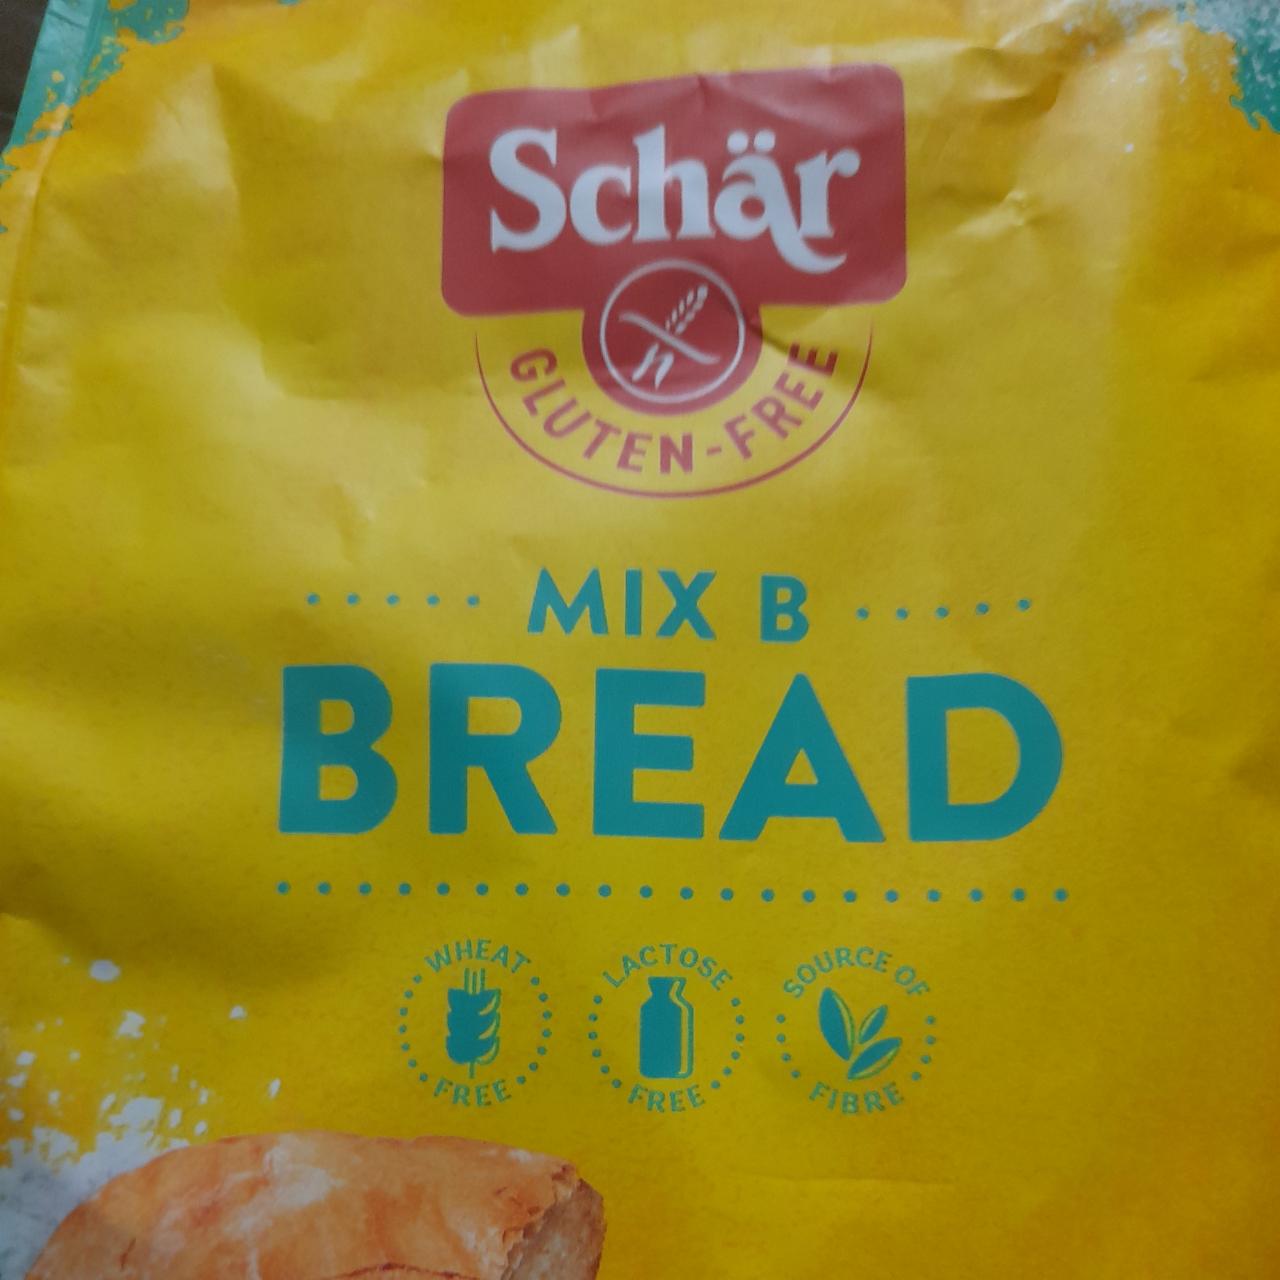 Zdjęcia - Mix B Bread Schär